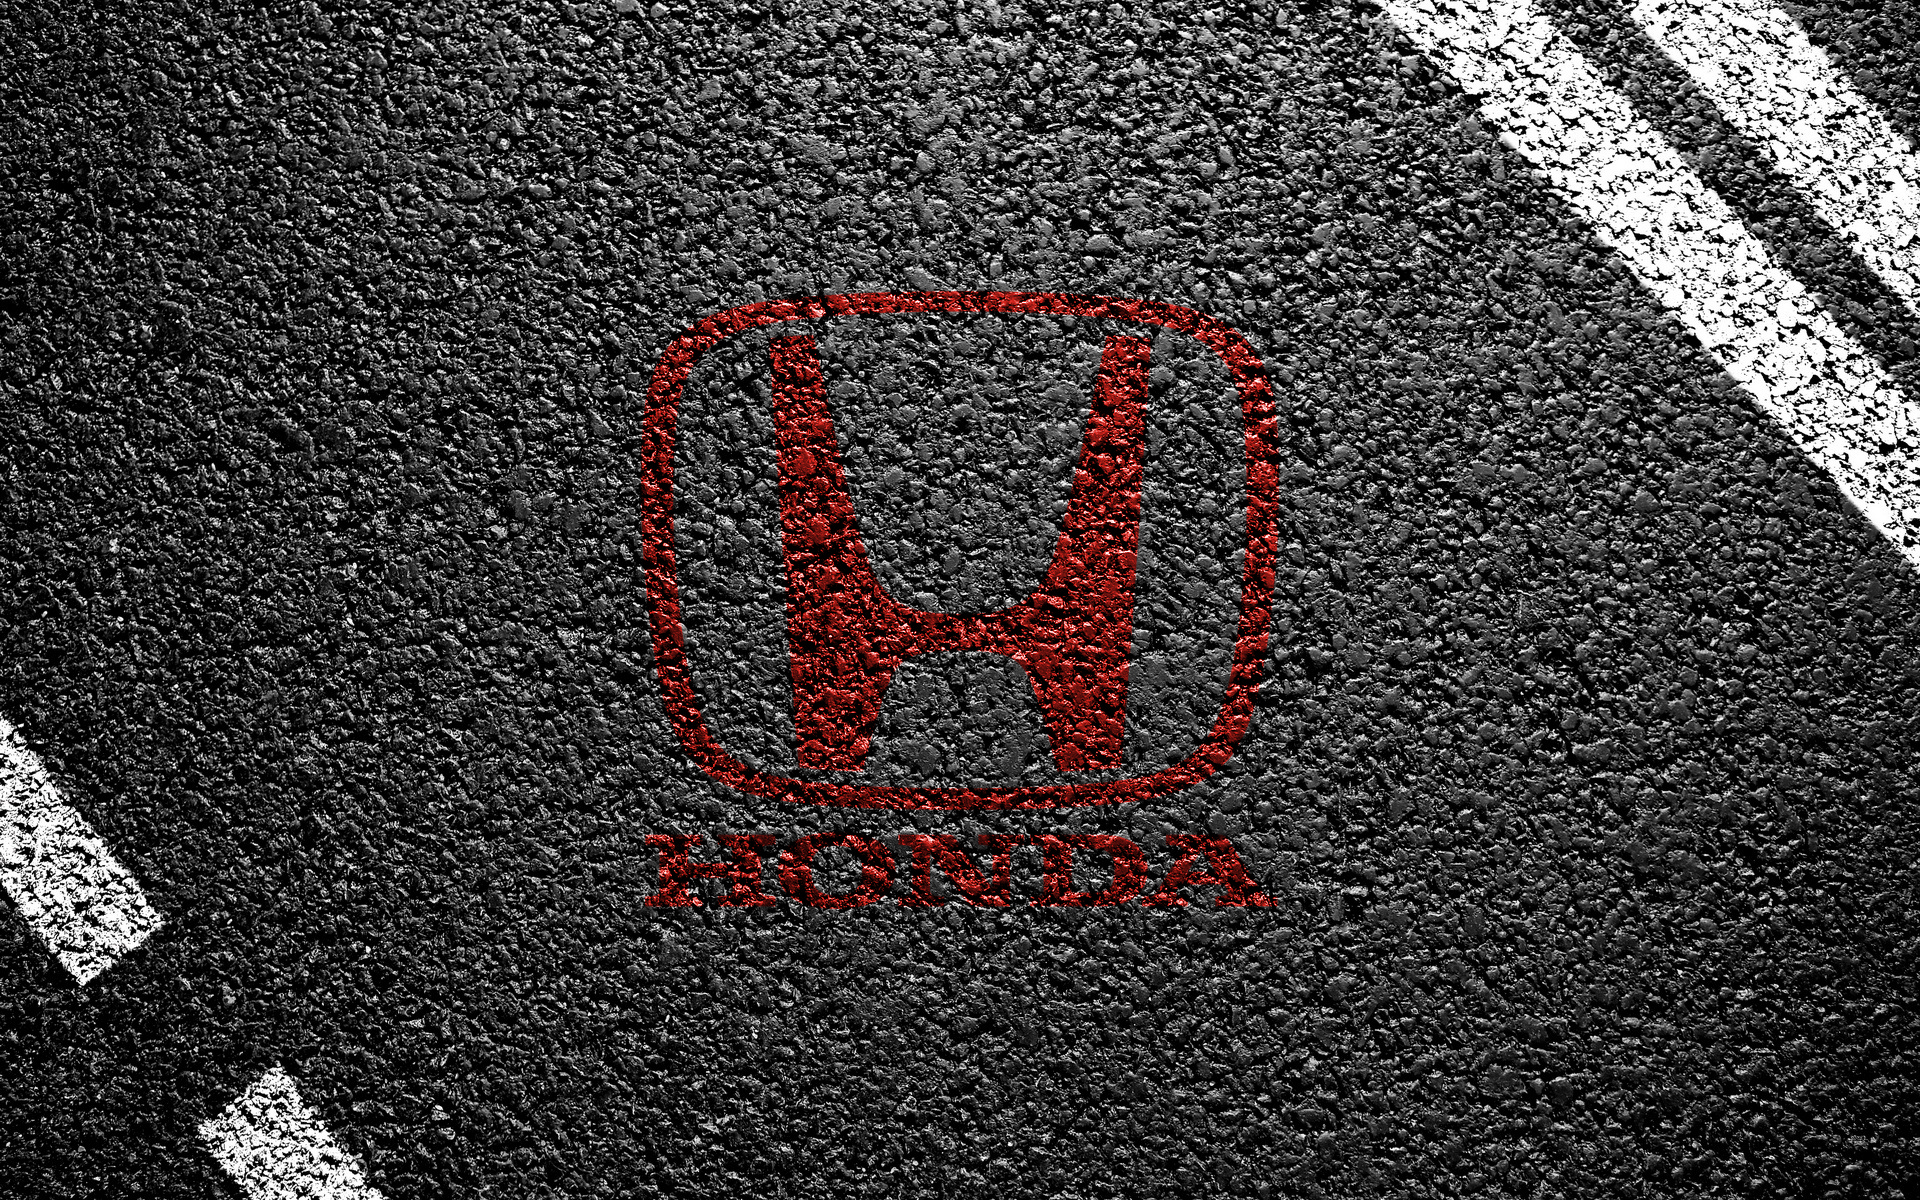 1080P Honda Wallpapers